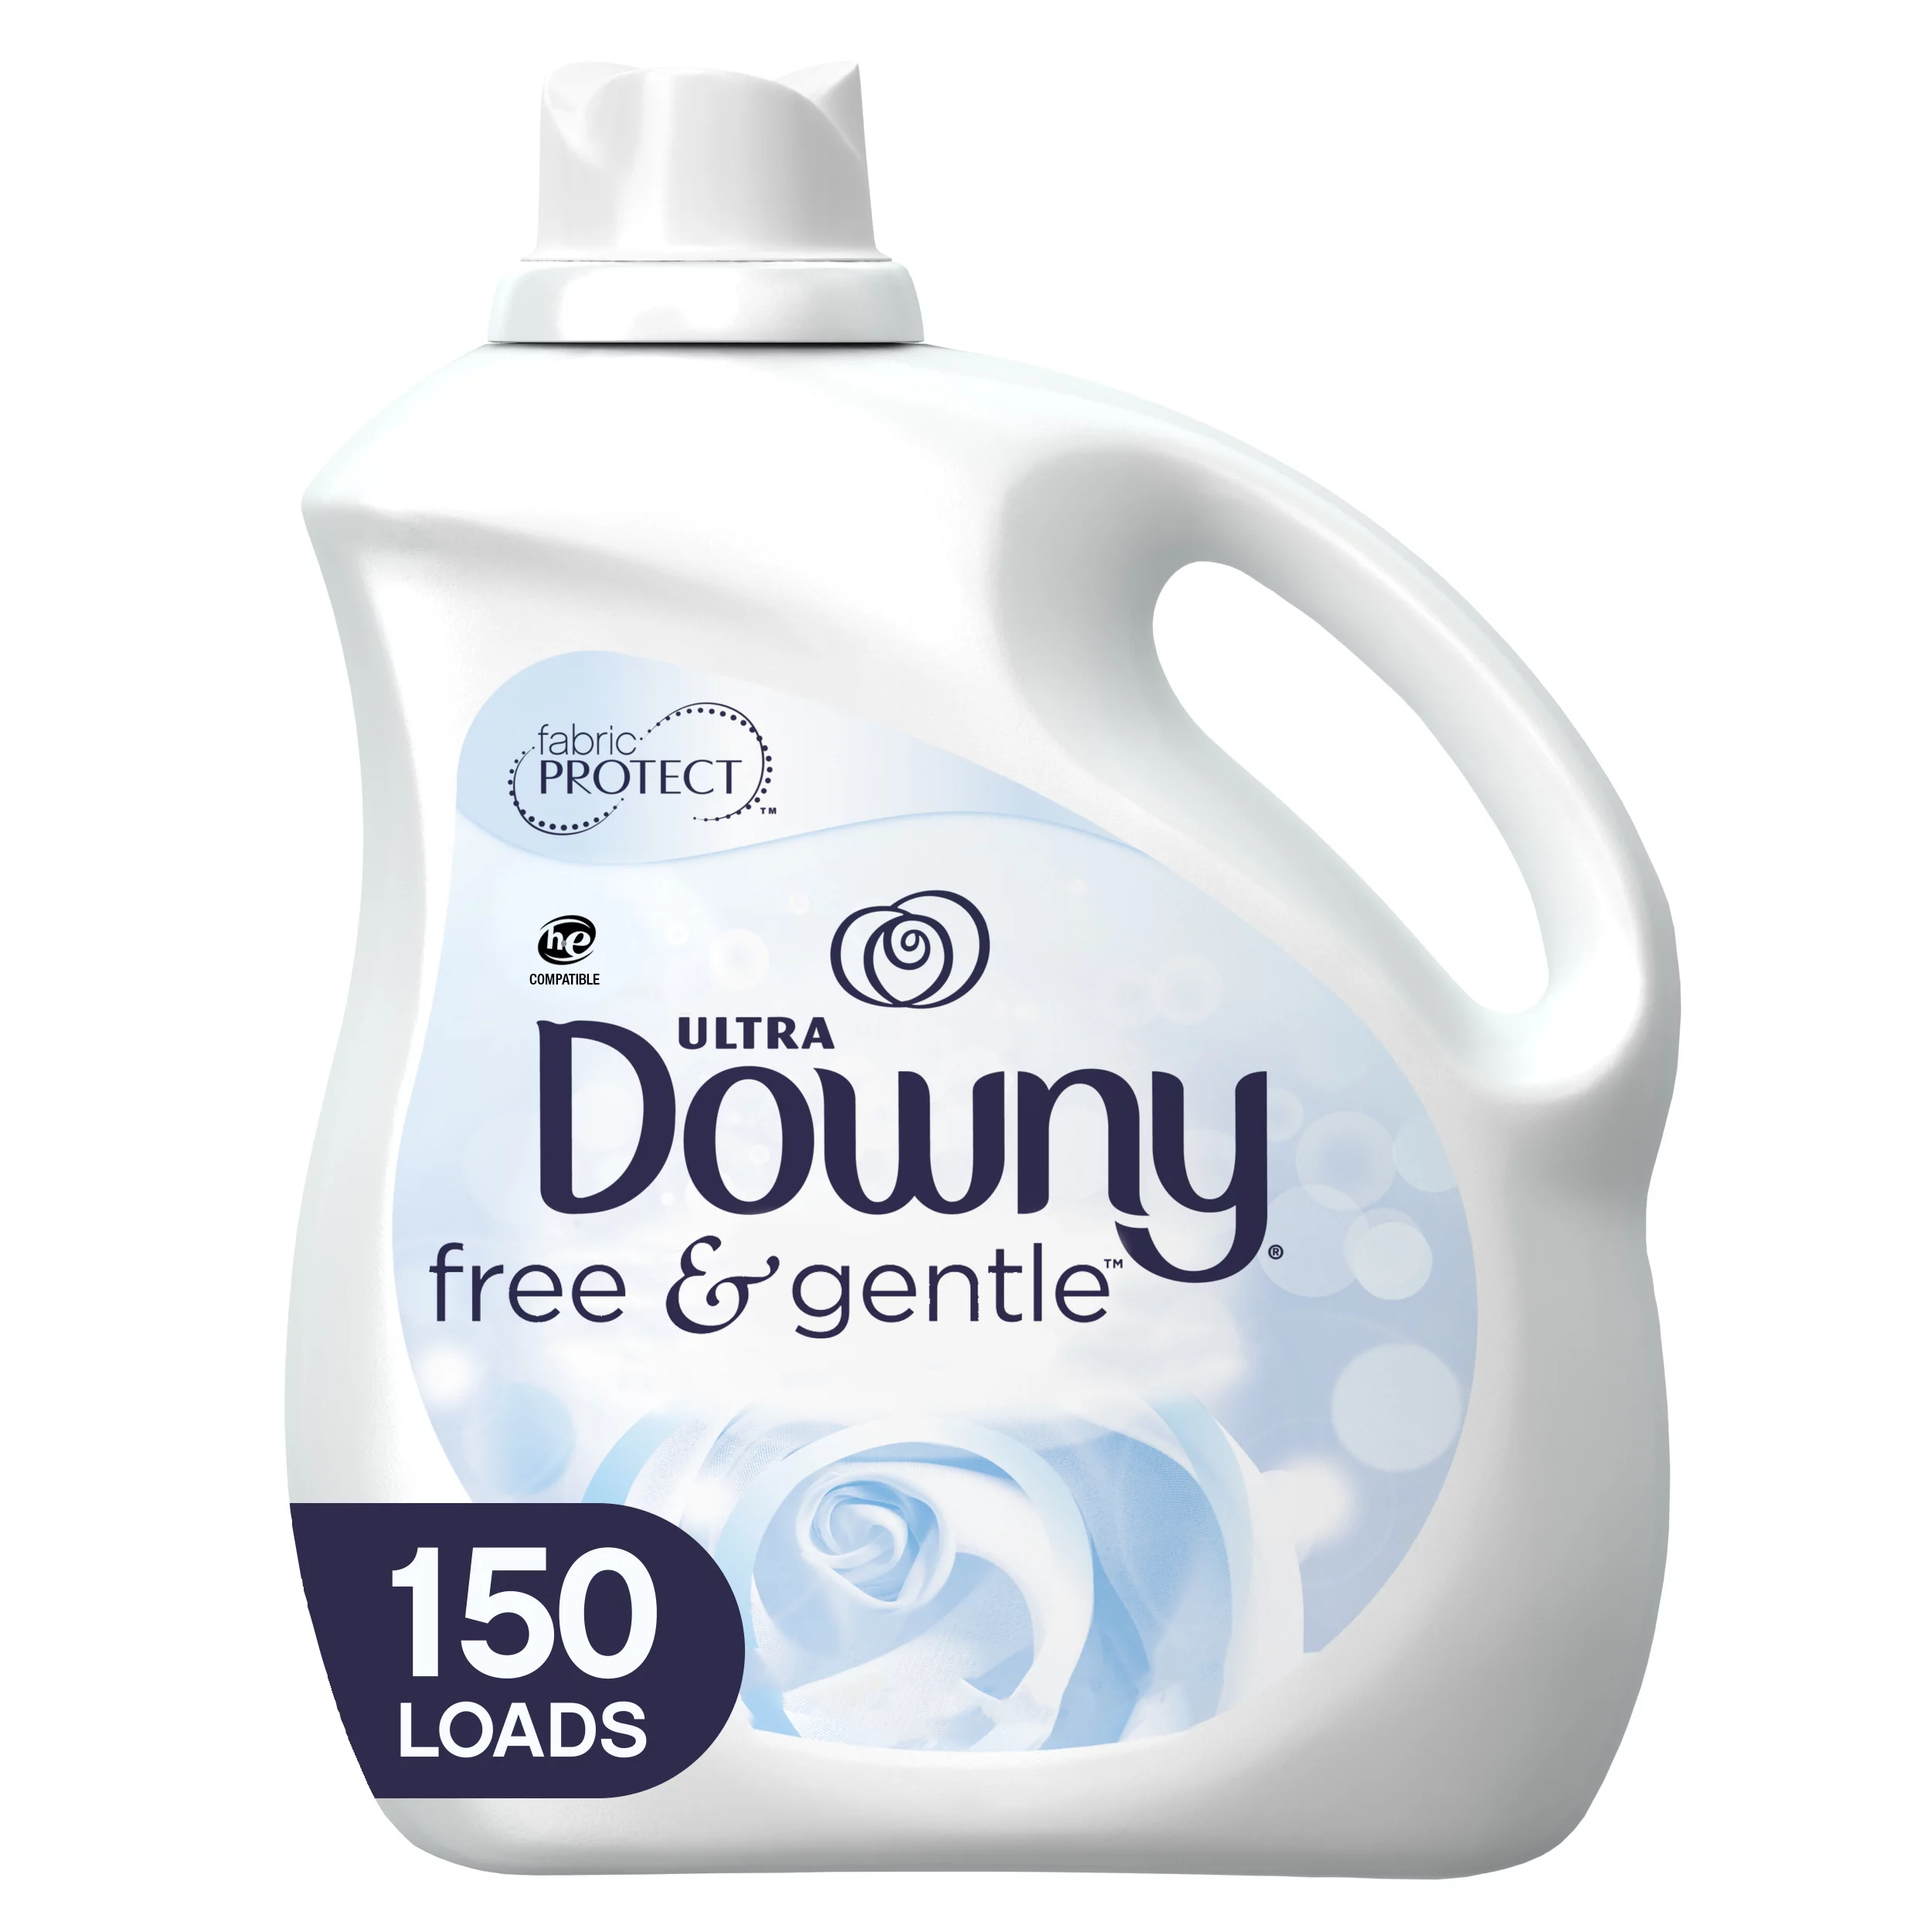 Downy Free & Gentle, 150 Loads Liquid Fabric Softener, 129 fl oz